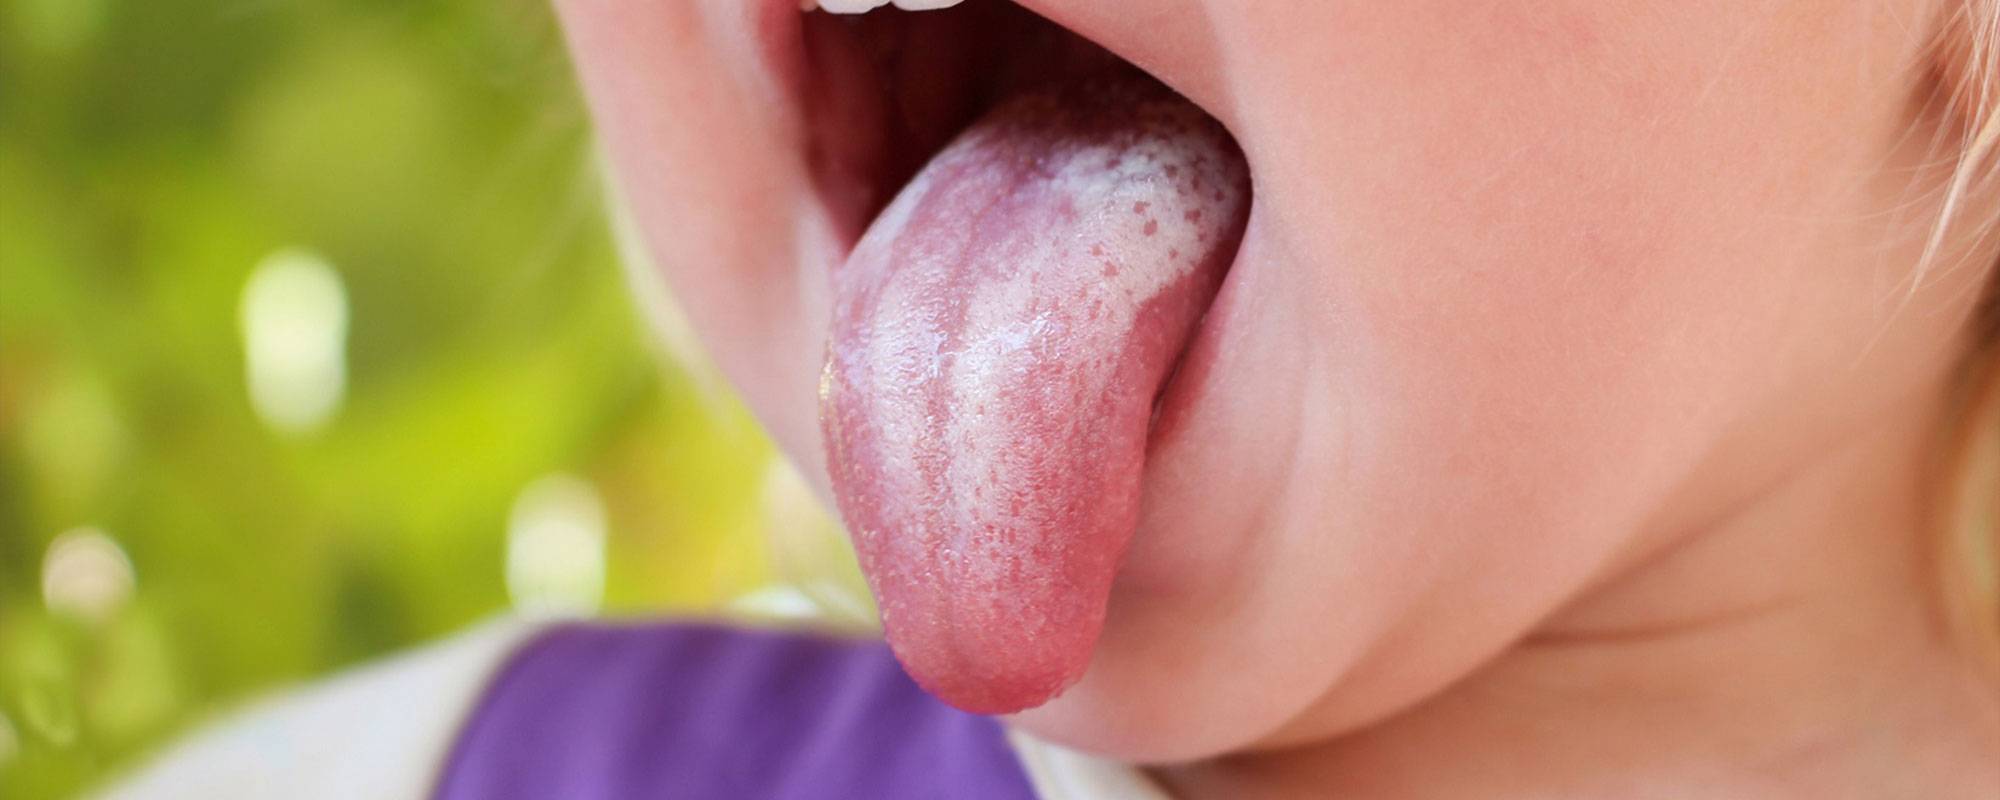 Кандидоз полости рта: фото языка, горла, симптомы во рту, ротовой полости у детей